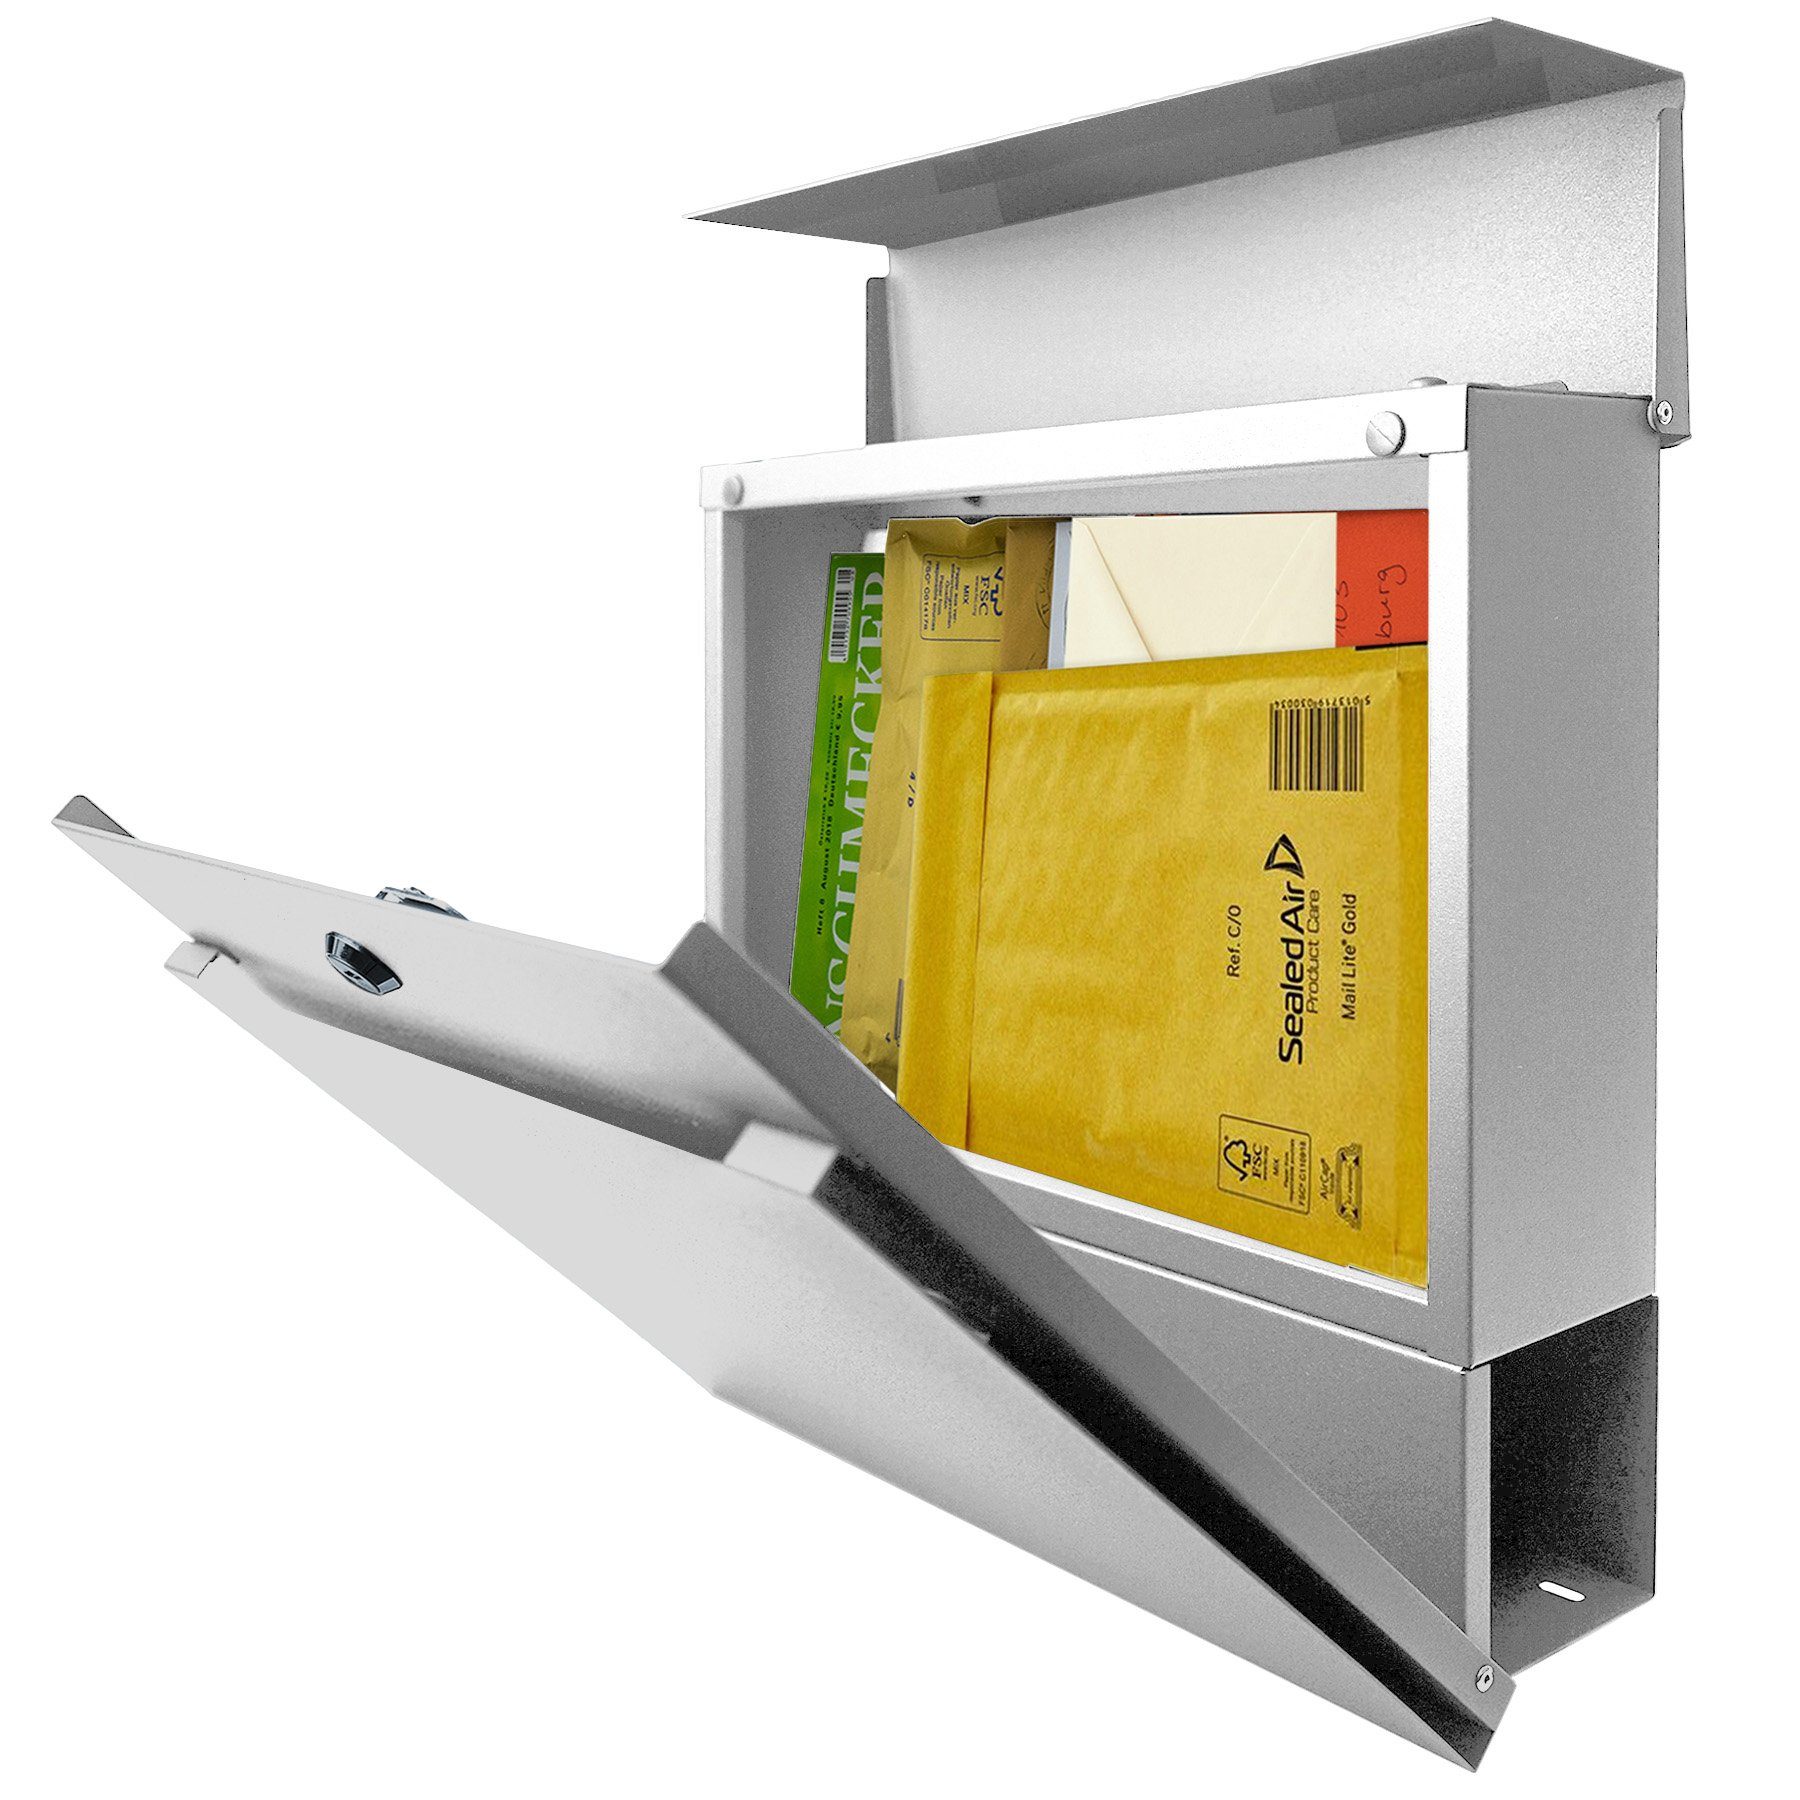 mit MOCAVI 713 weiß, Briefkasten Box Zeitungsfach MOCAVI Briefkasten integriert